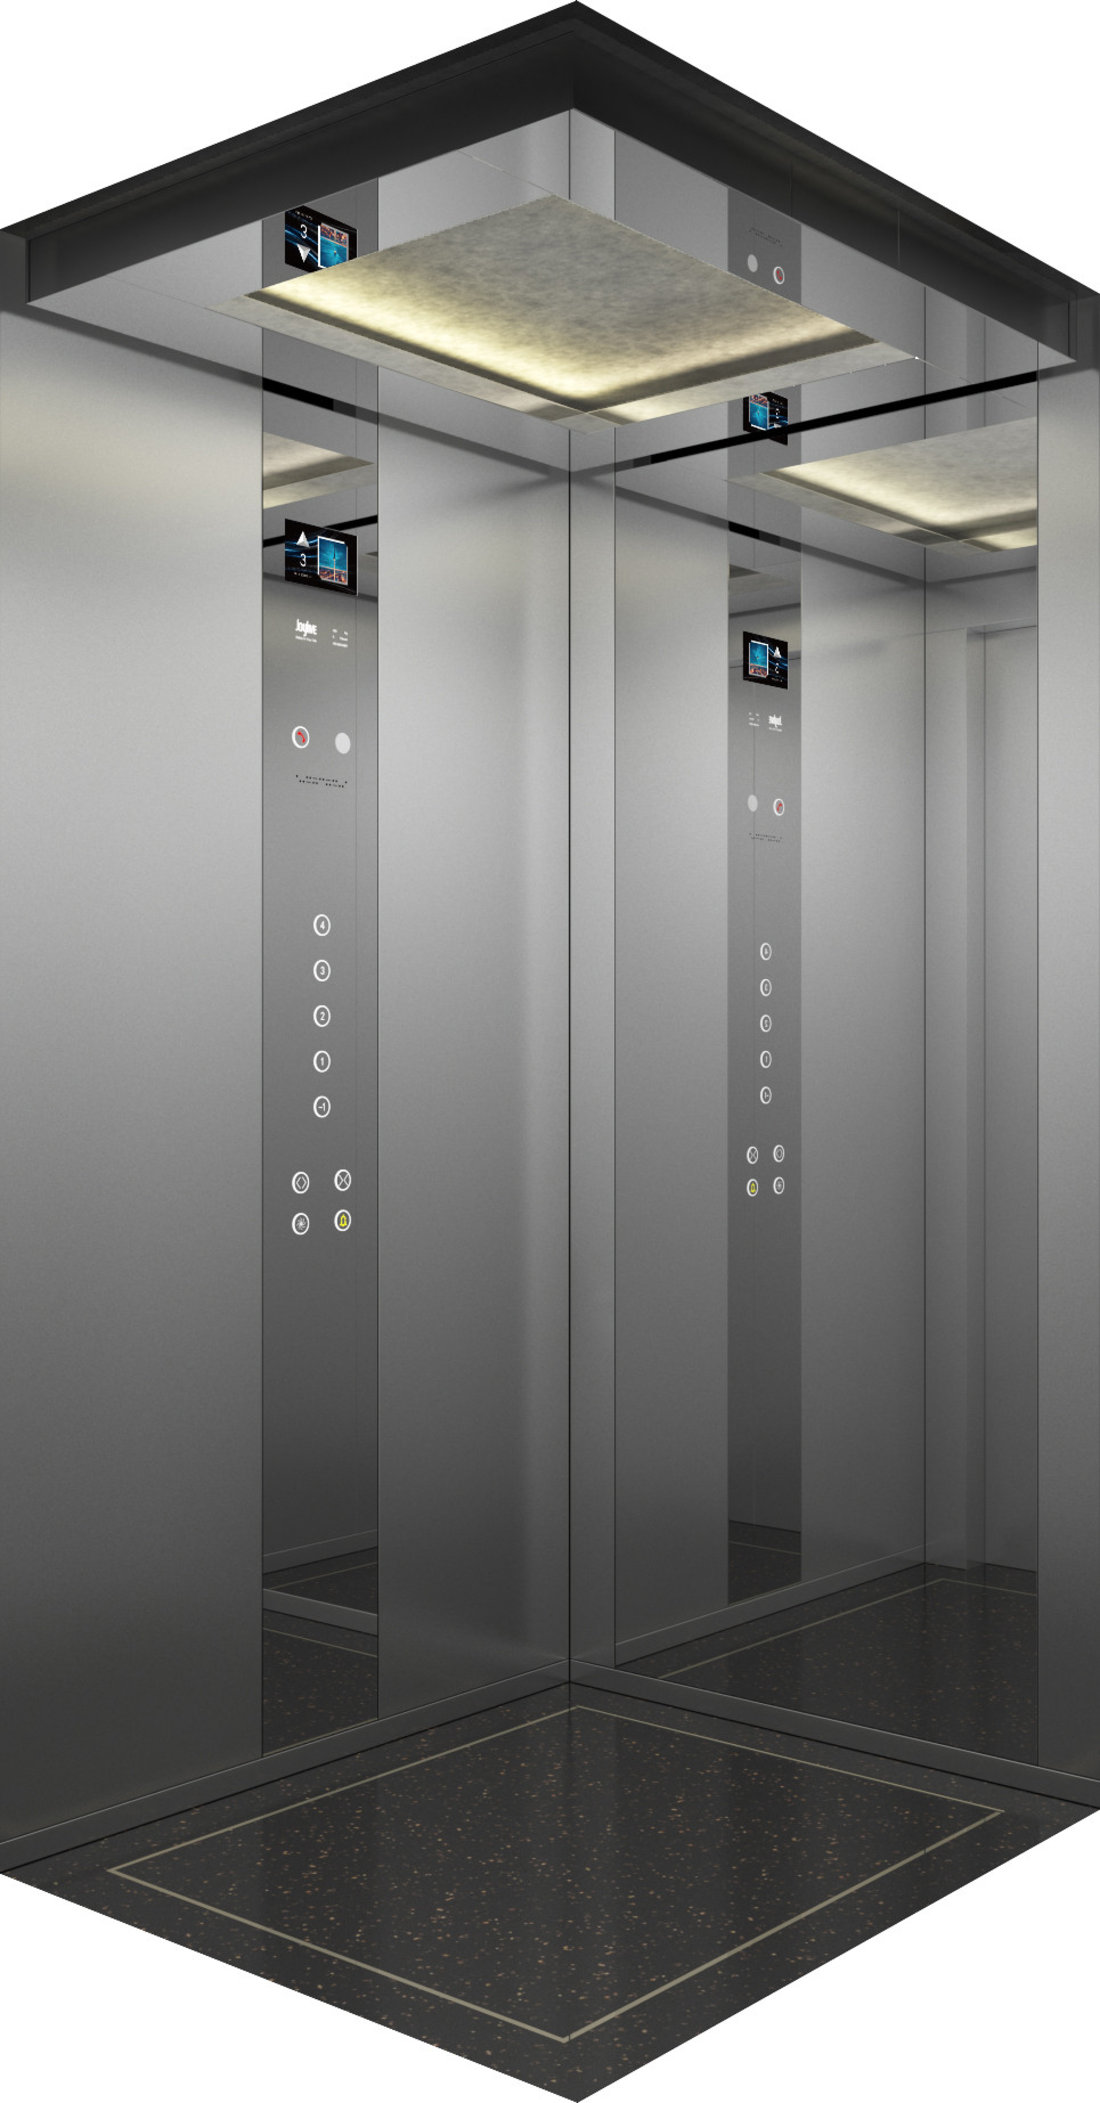 品牌巨立电梯产地中国材质不锈钢颜色本色风格现代参考价60000